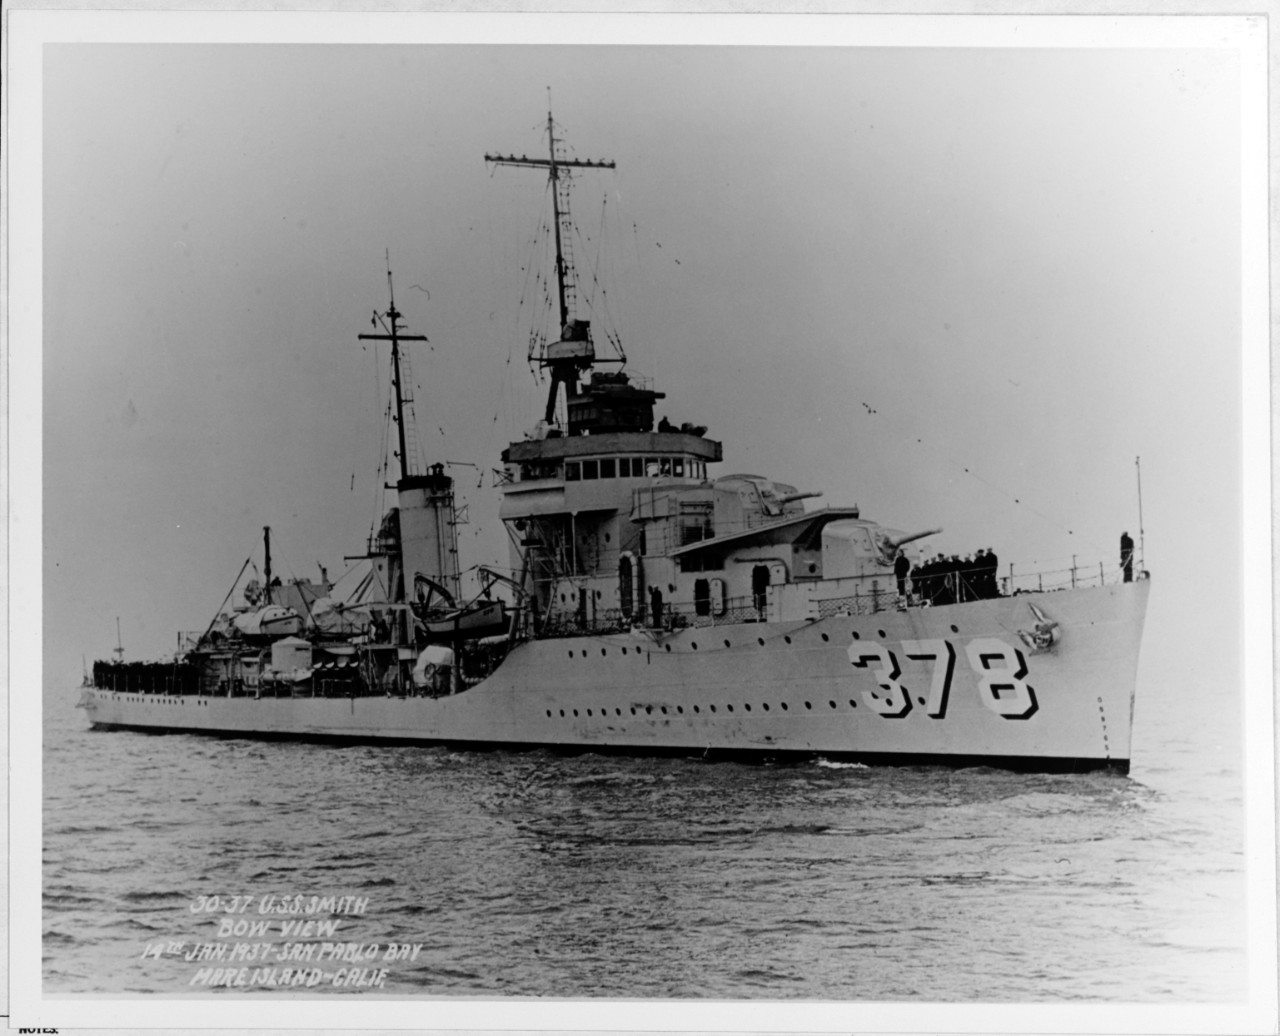 USS SMITH (DD 378)